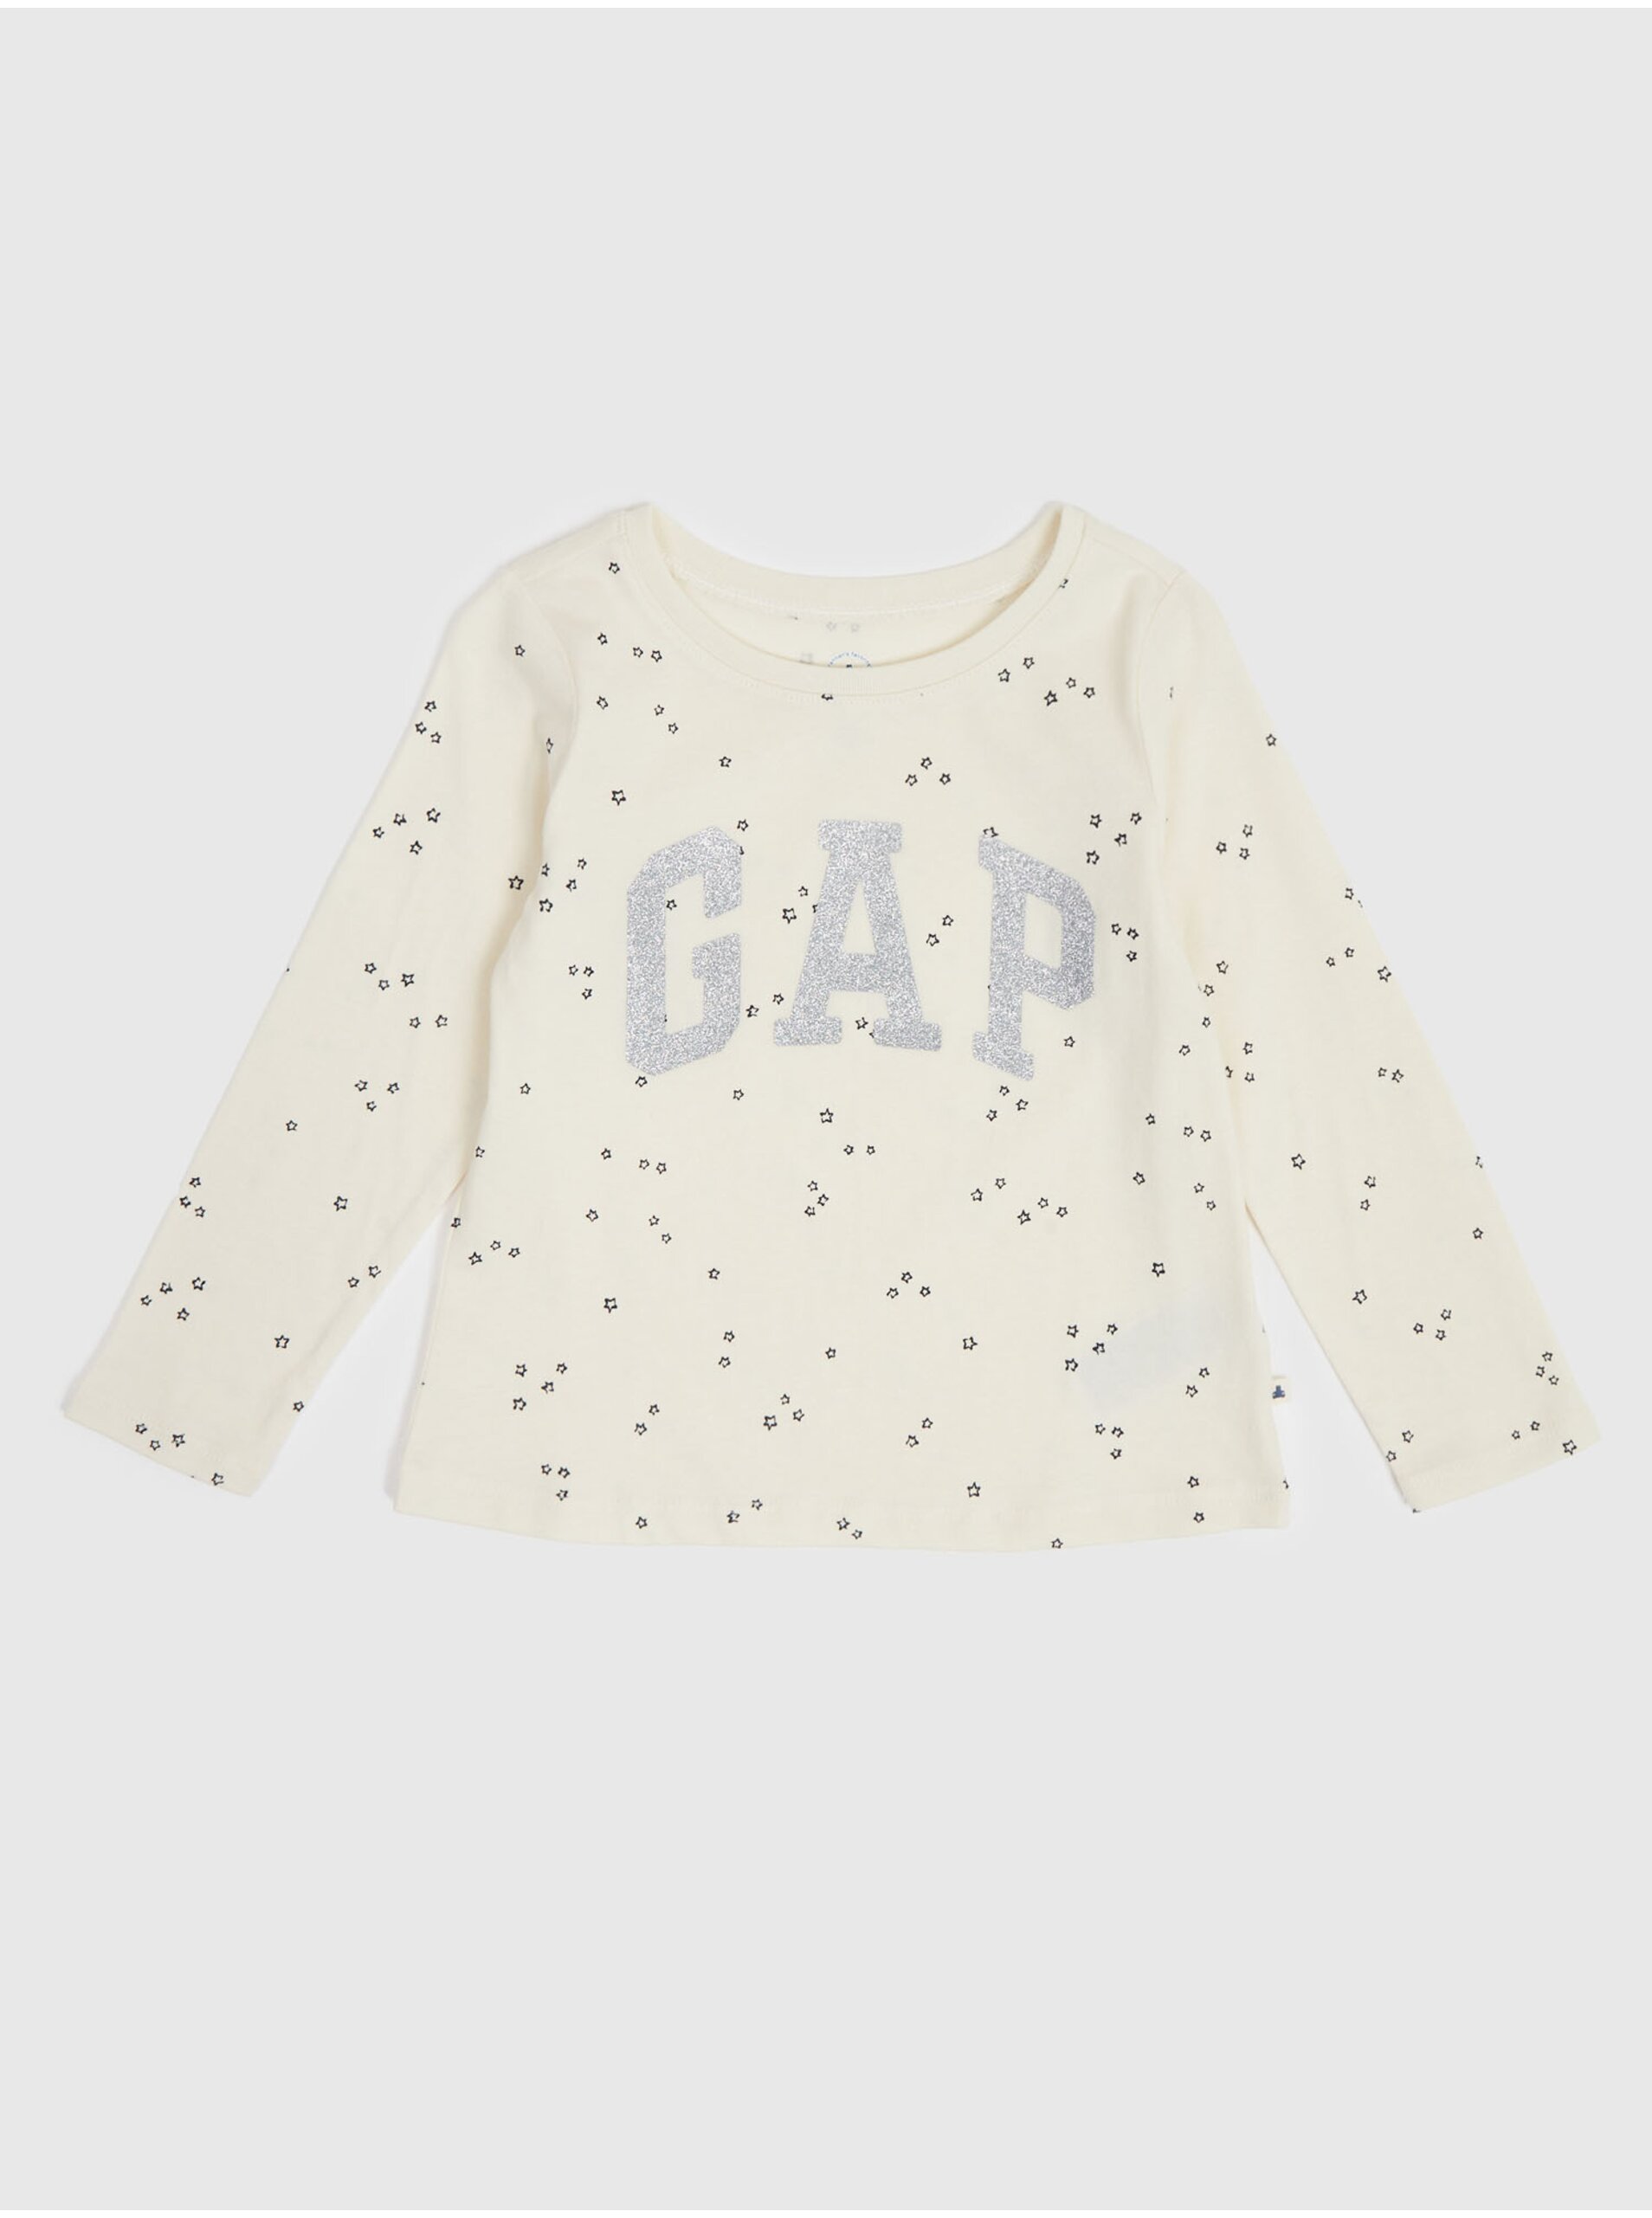 Lacno Krémové dievčenské vzorované tričko s logom GAP